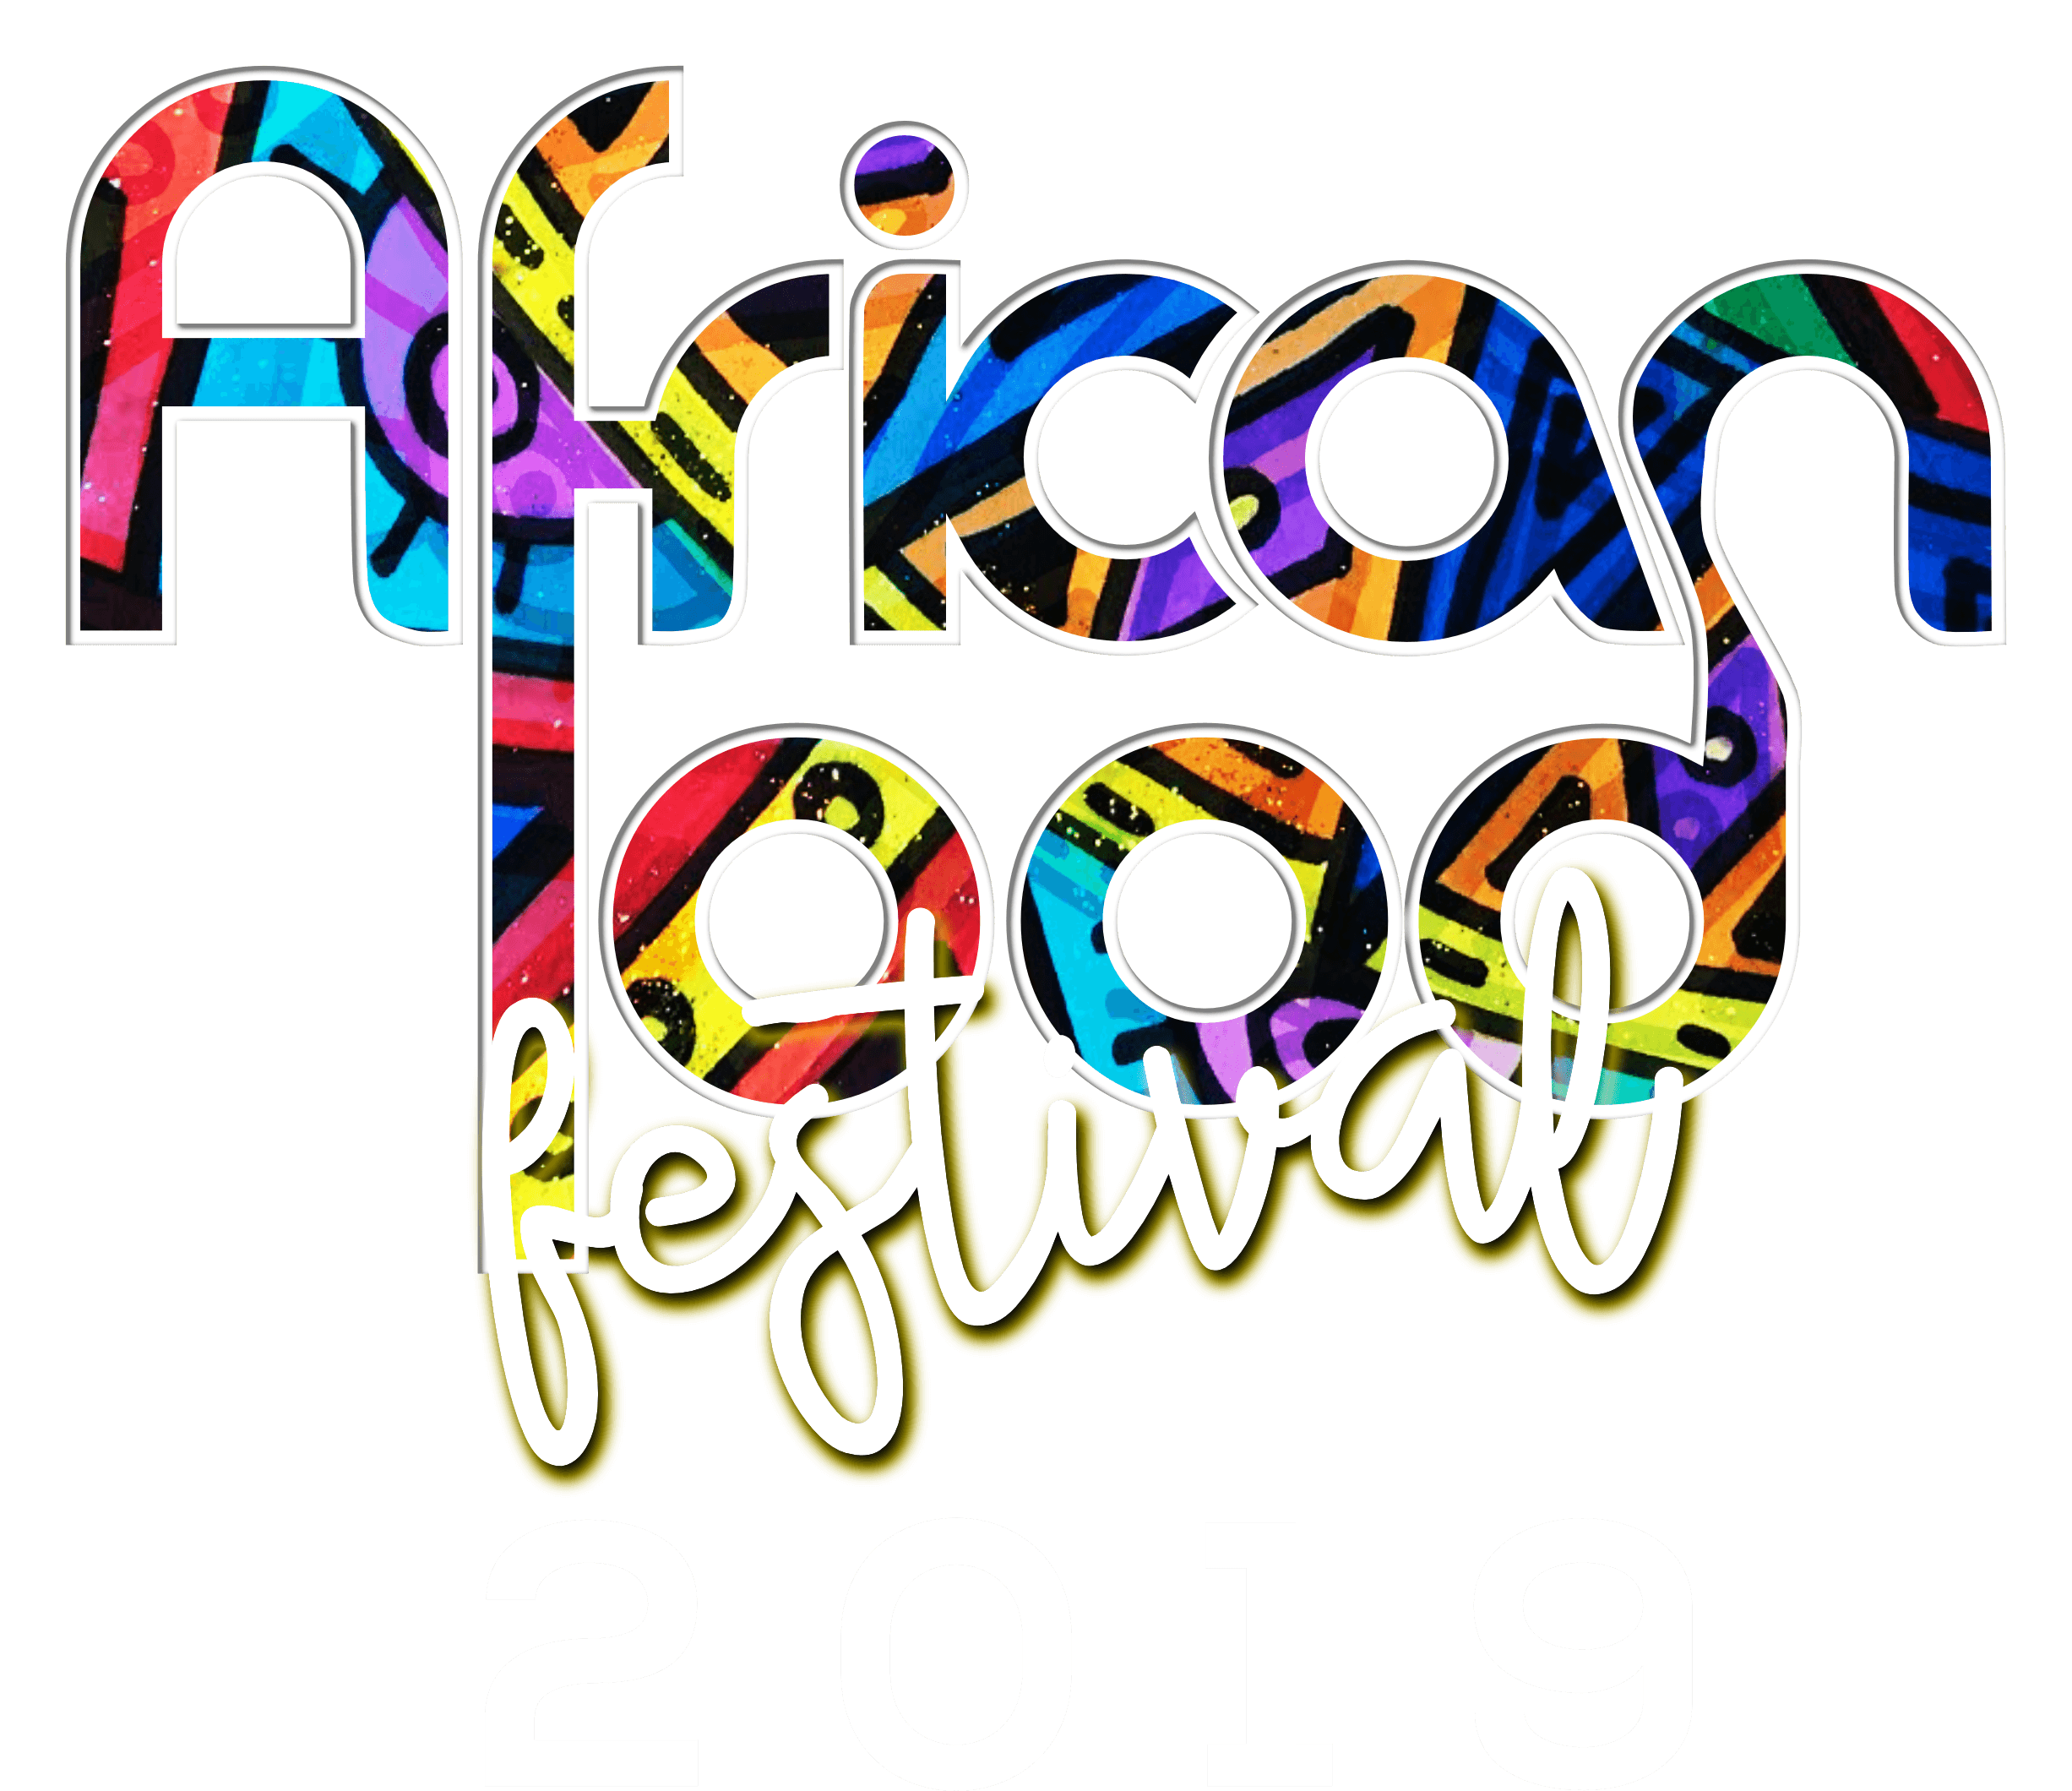 African Food Fest 2019 - Coming Soon in UAE